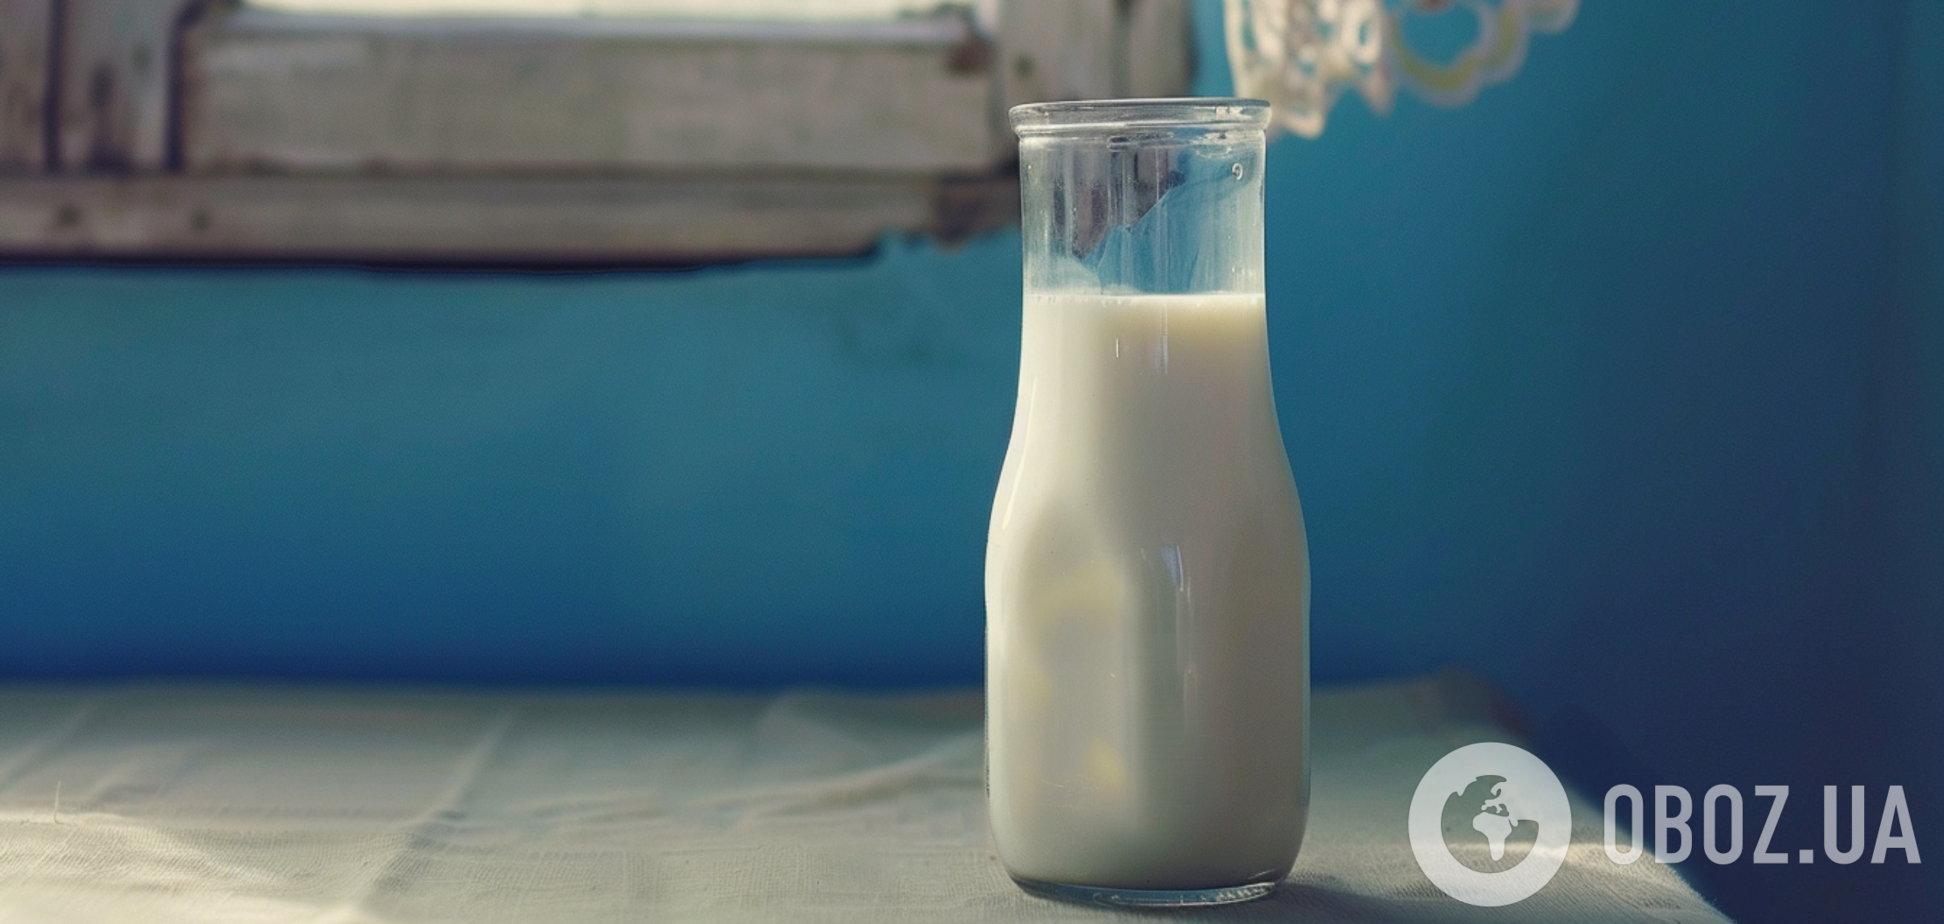 Почему в СССР молоко продавали в треугольных пакетах: объяснение